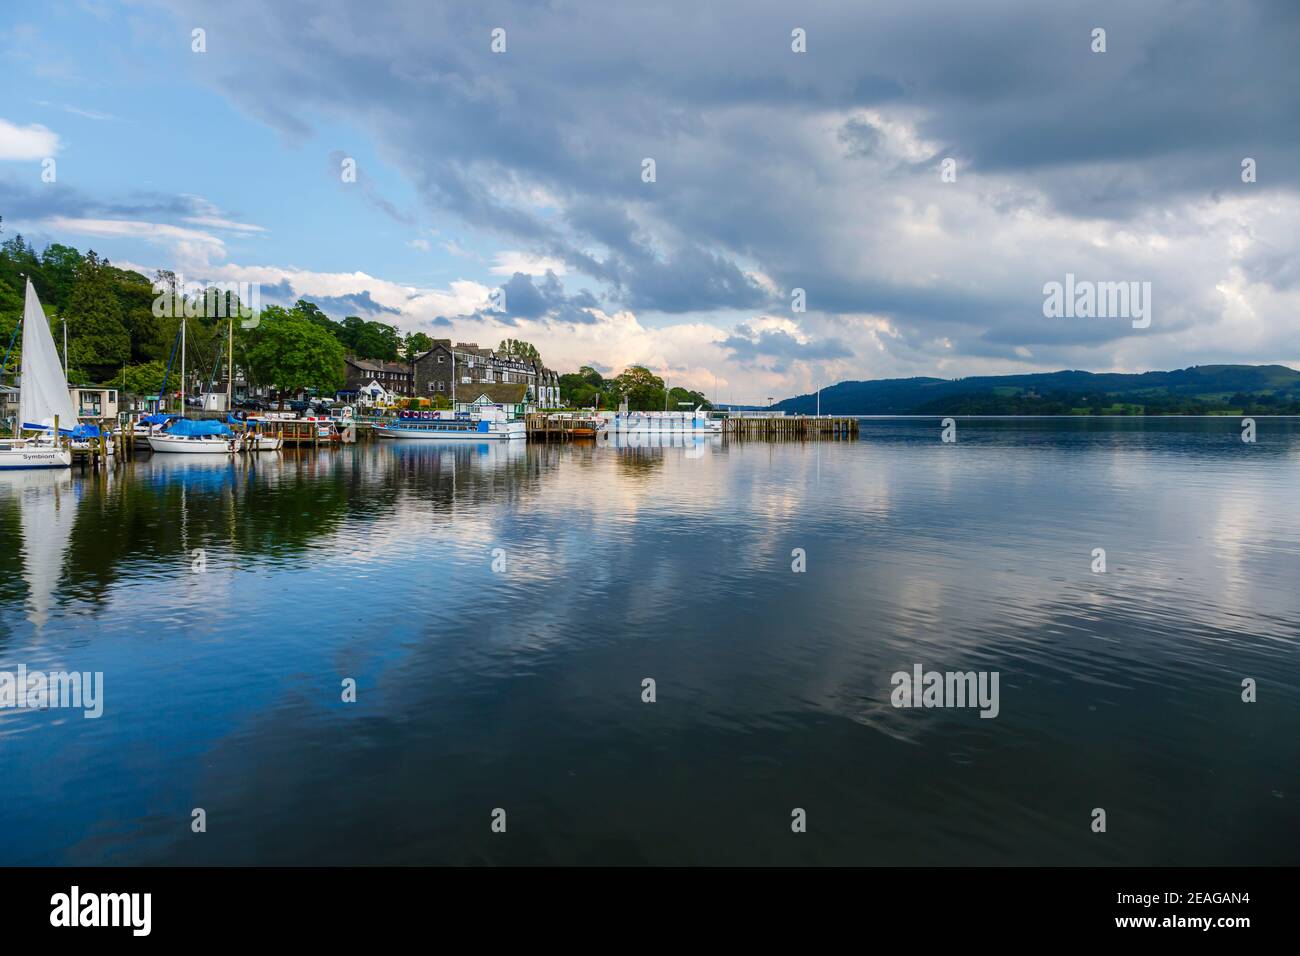 Vista sul lago Windermere nel quartiere inglese dei laghi, Waterhead ad Ambleside, Cumbria, Inghilterra nord-occidentale con barche ormeggiate sulla costa Foto Stock